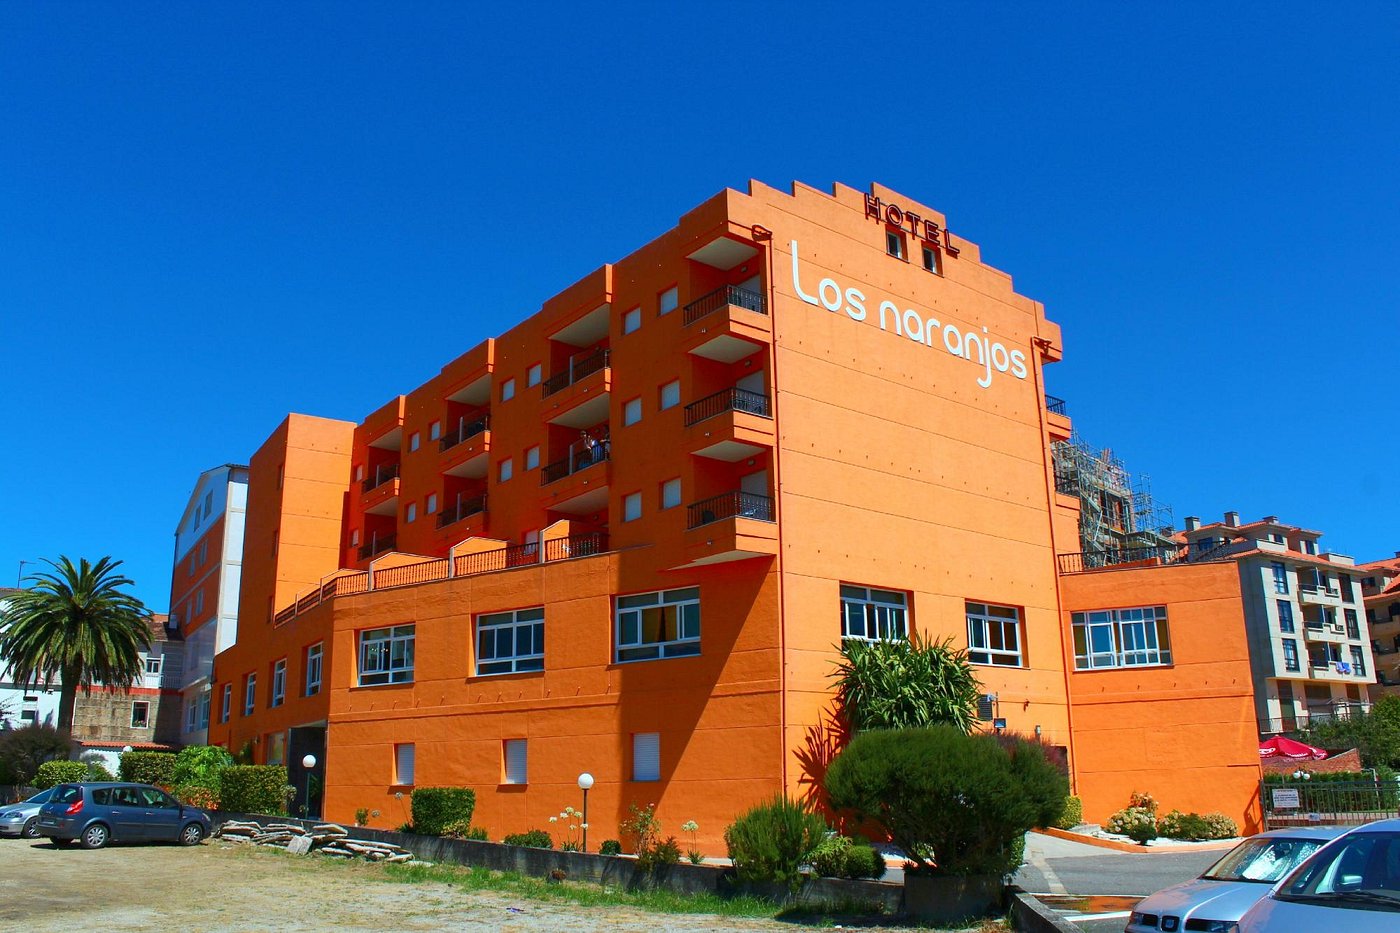 Hotel Los Naranjos ?w=1400&h= 1&s=1